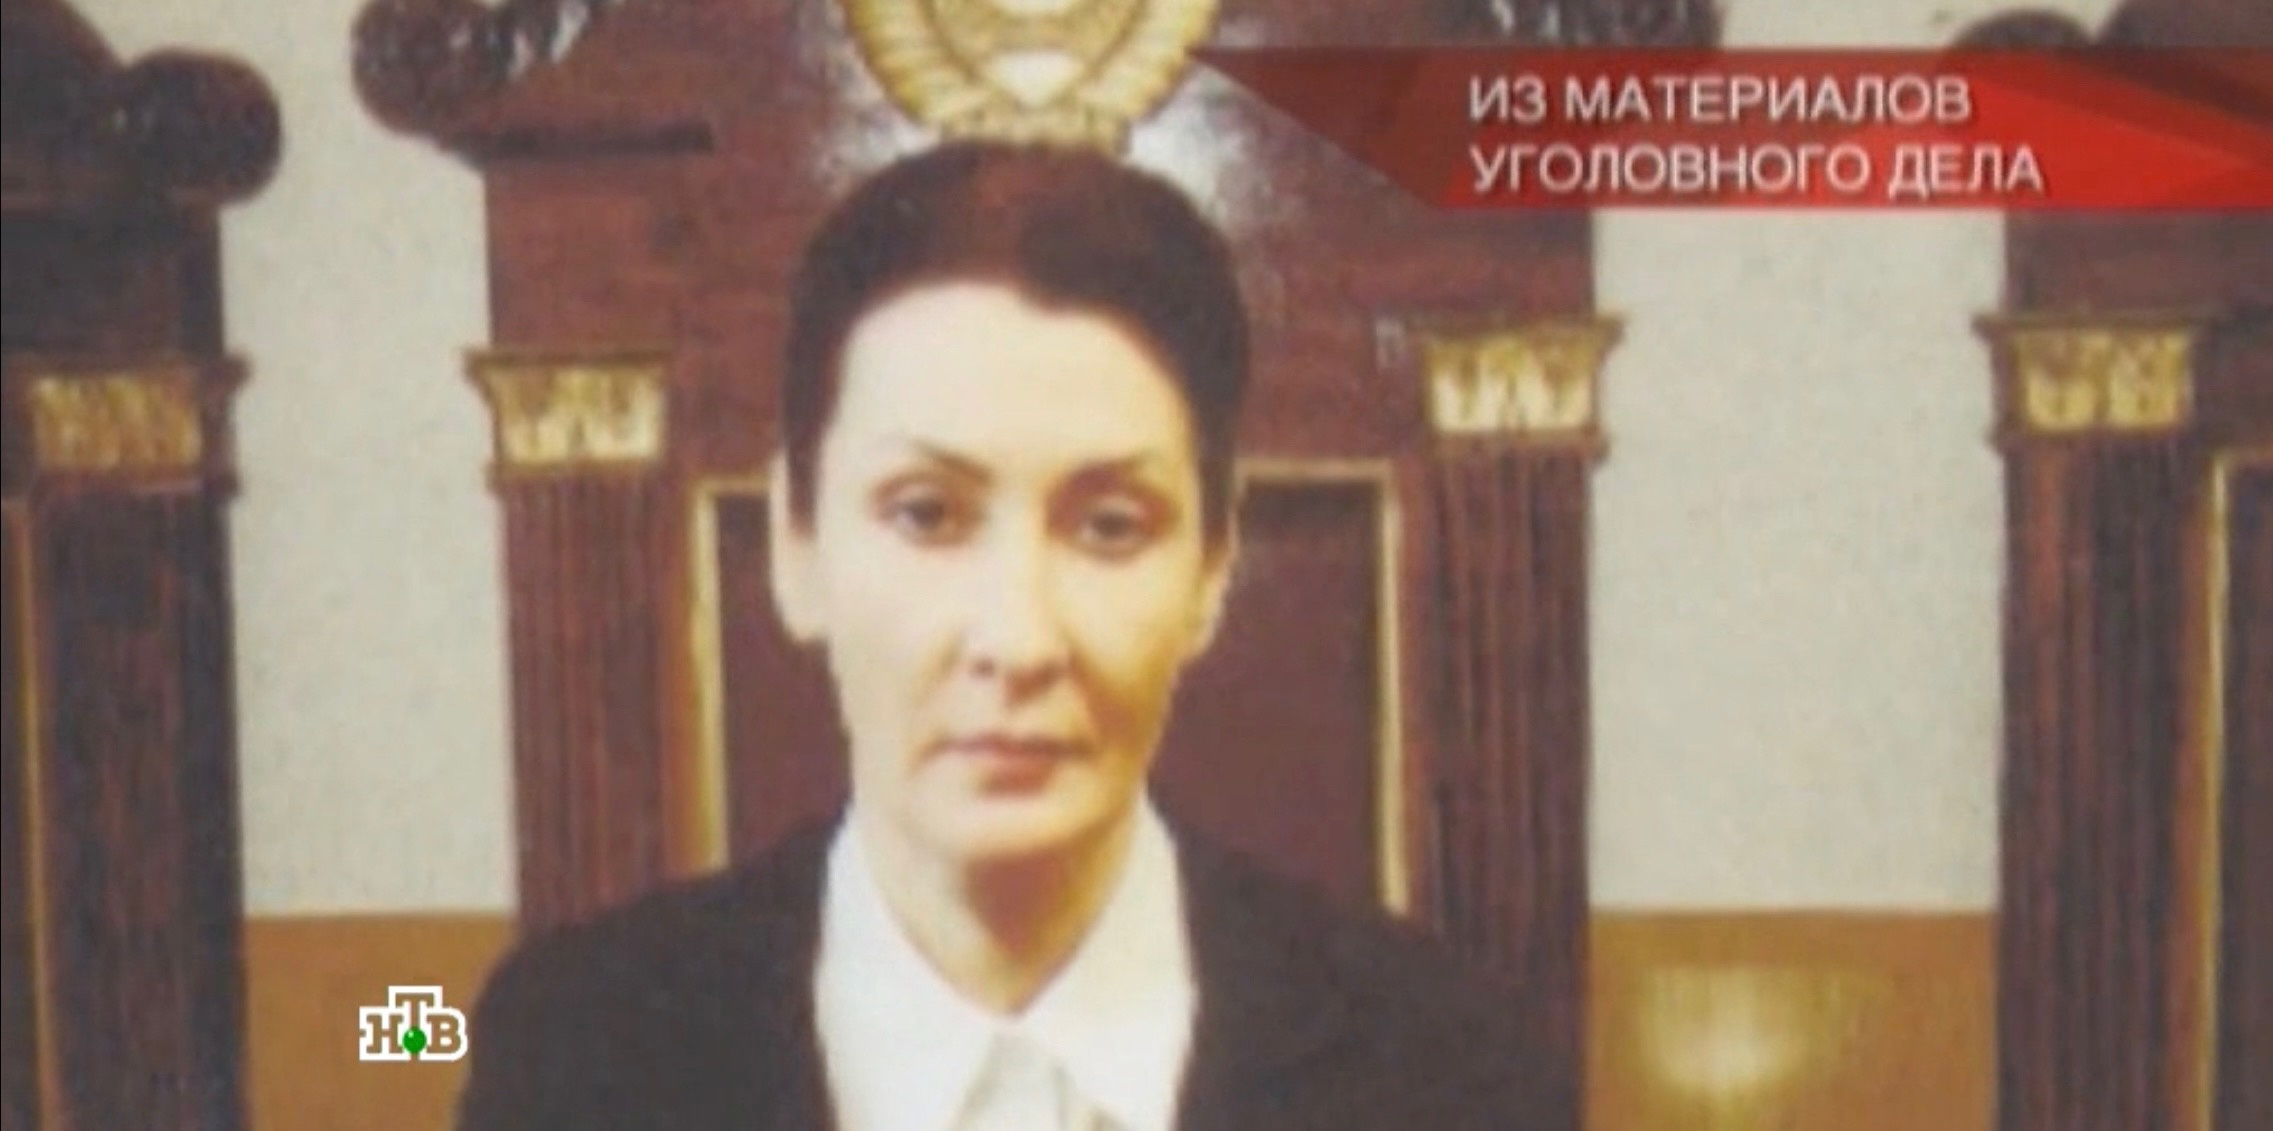 Мария Овсянникова работала судьей